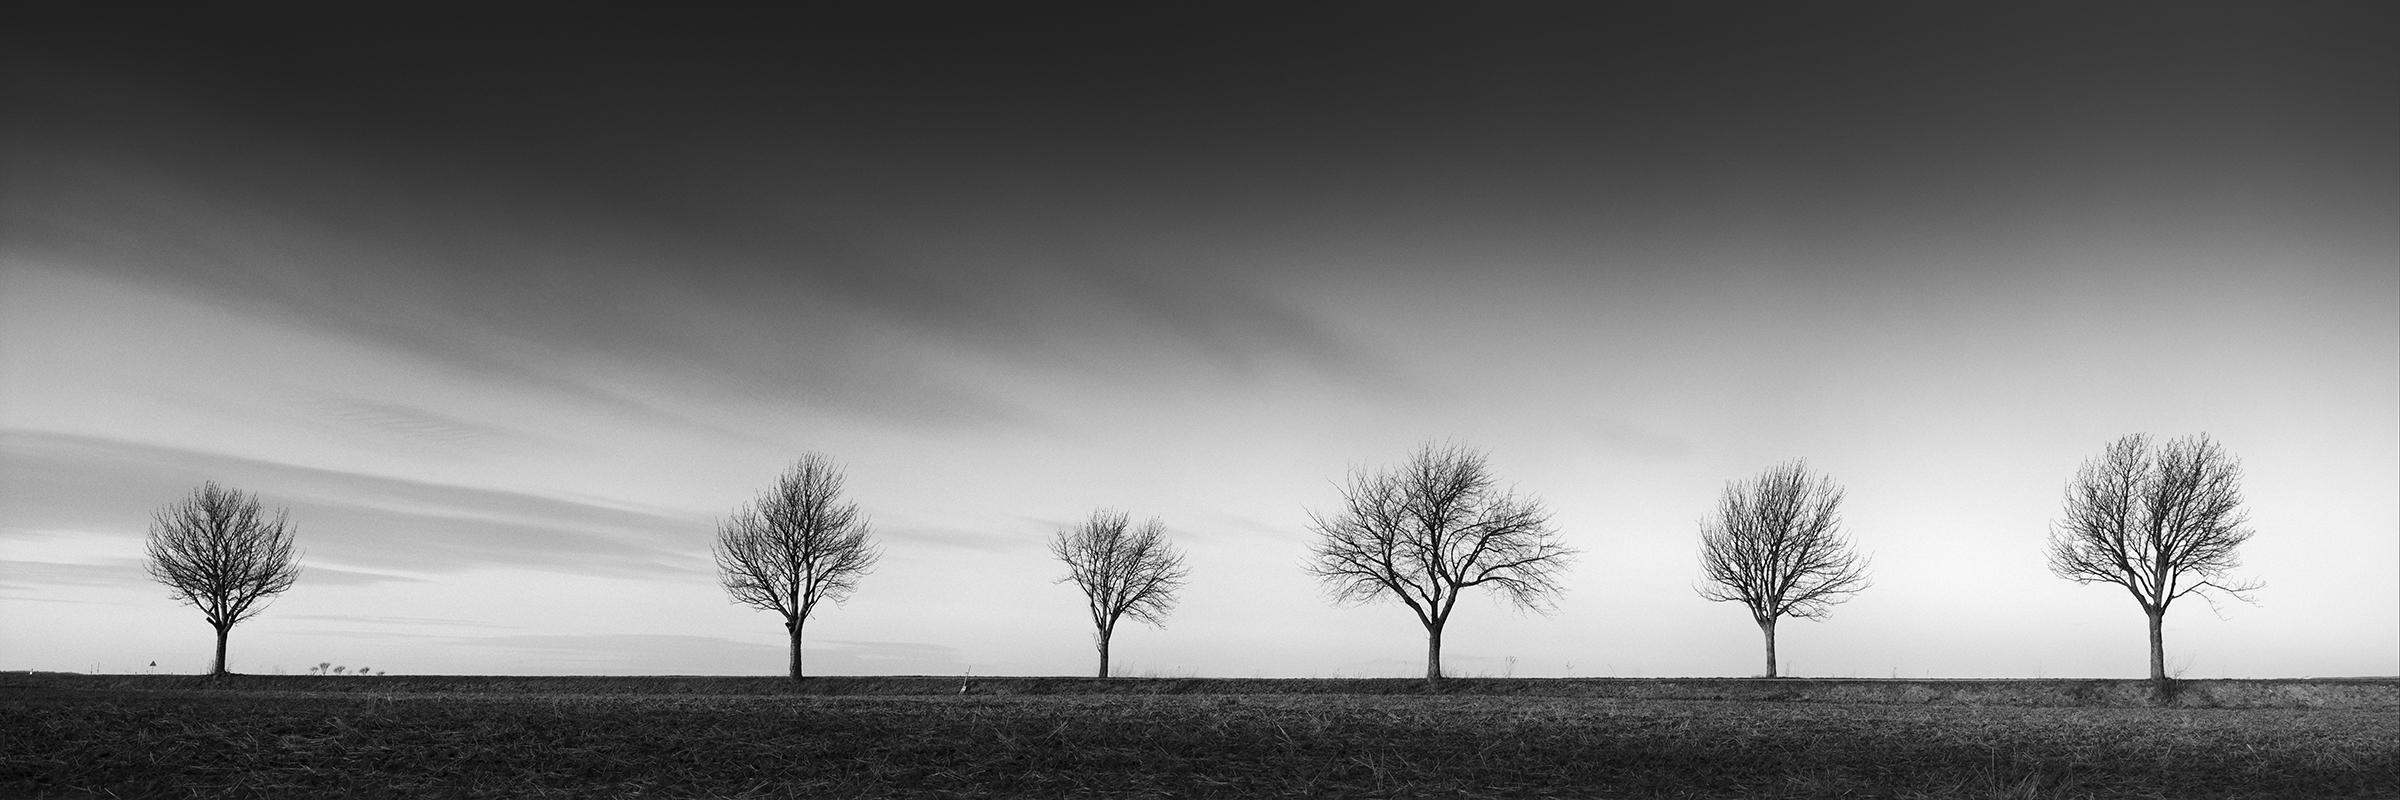 Gerald Berghammer Black and White Photograph – Row of Six Cherry Trees, Sonnenuntergang, Schwarz-Weiß- Panoramenfotografie, Landschaft